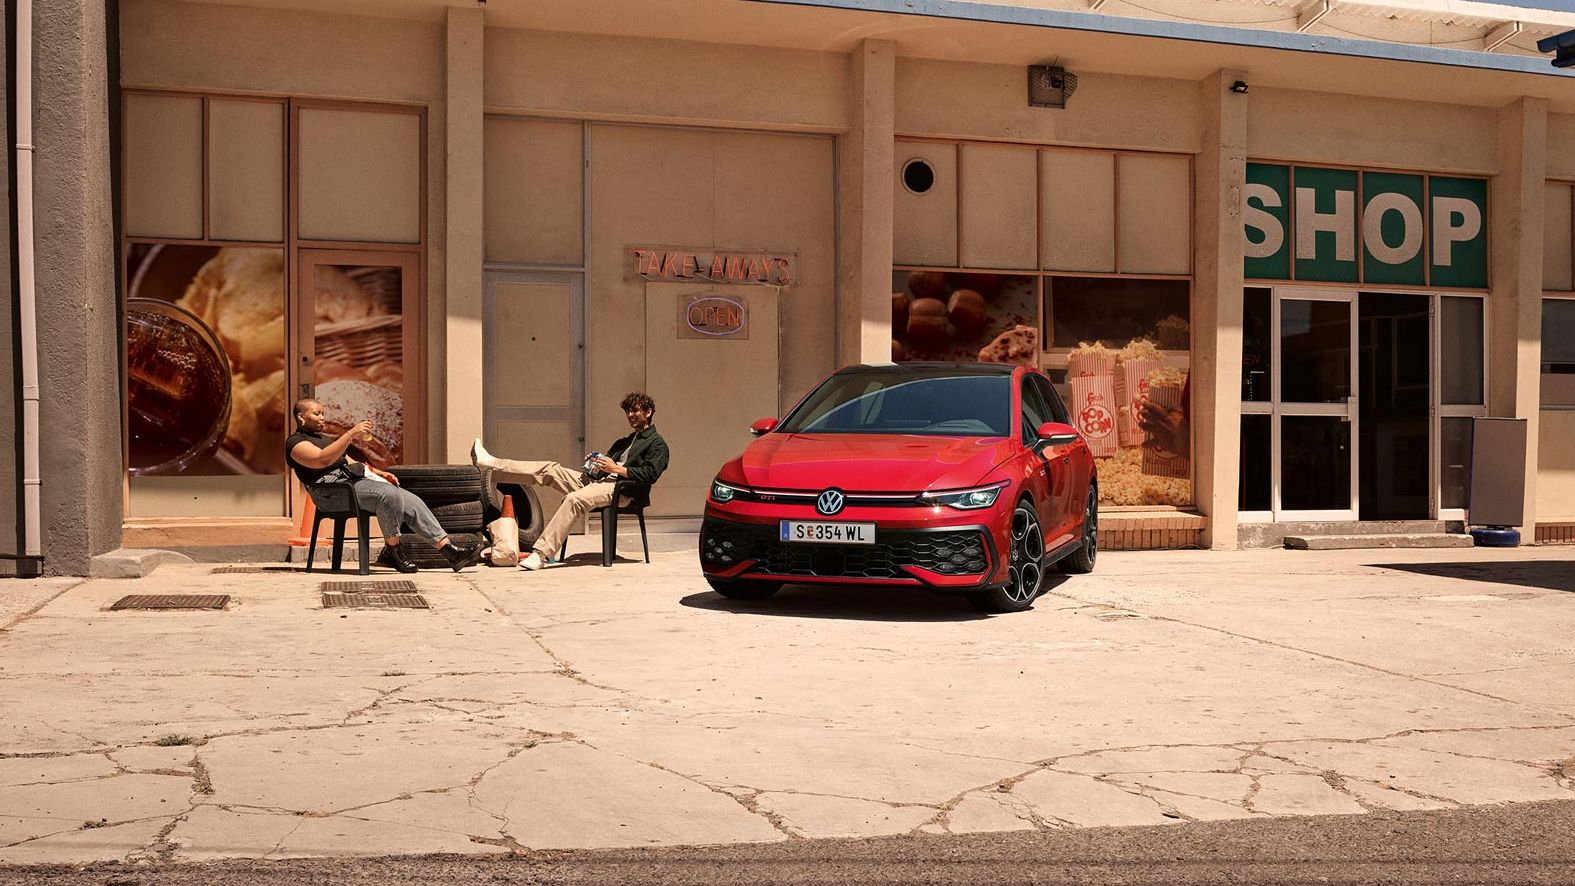 Der VW Golf GTI geparkt vor Gebäude, zwei junge Leute sitzen daneben in Stühlen